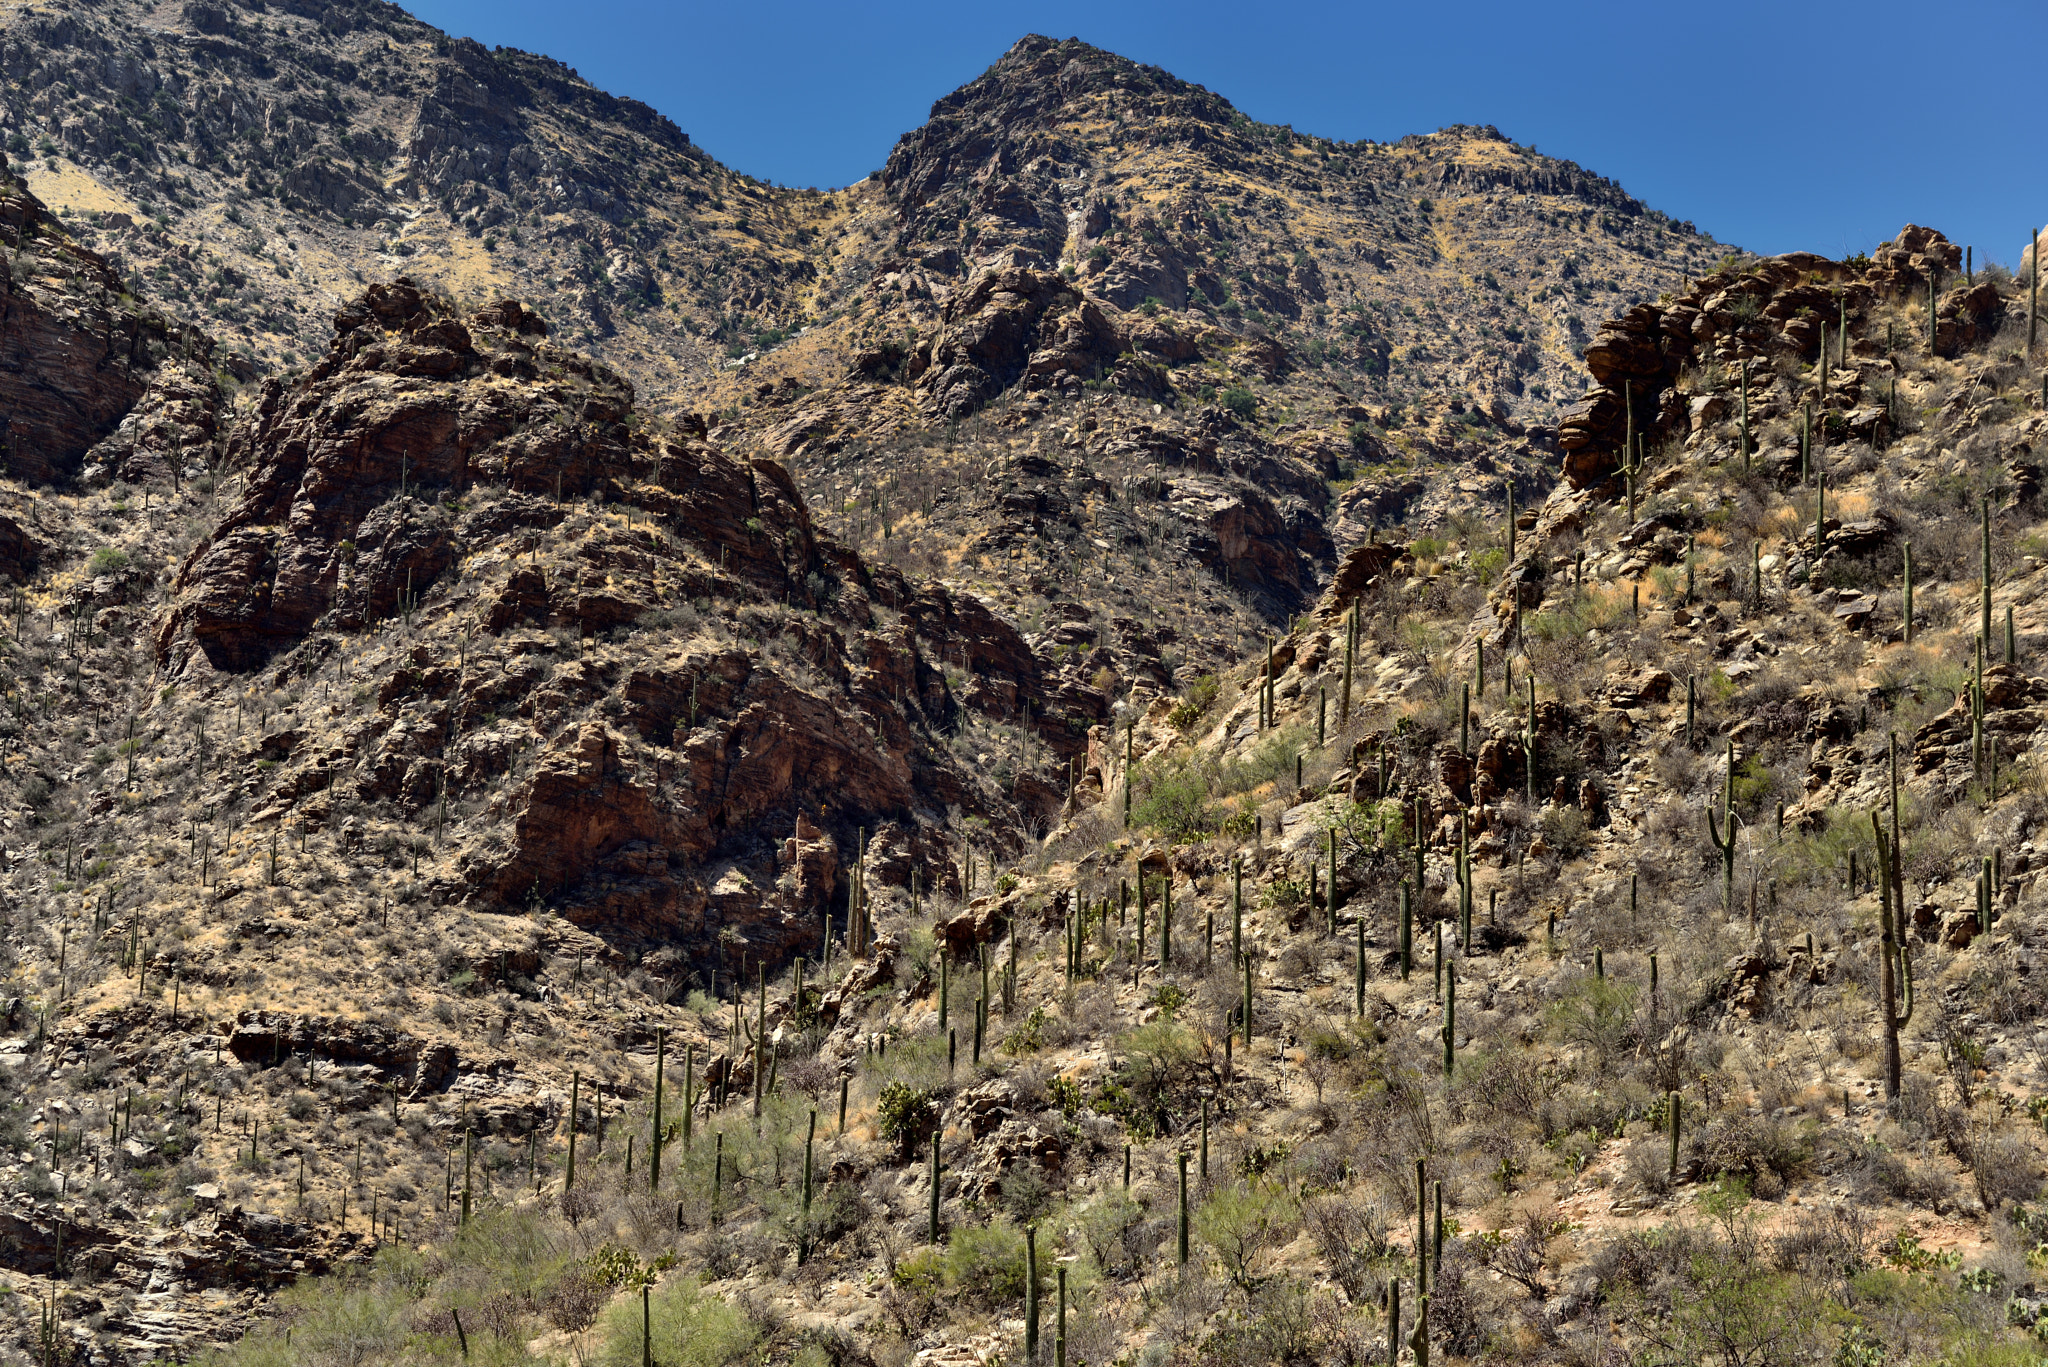 Nikon D800E + Nikon AF-S Nikkor 24-120mm F4G ED VR sample photo. A rugged hillside of rocks, boulders and saguaro cactus photography